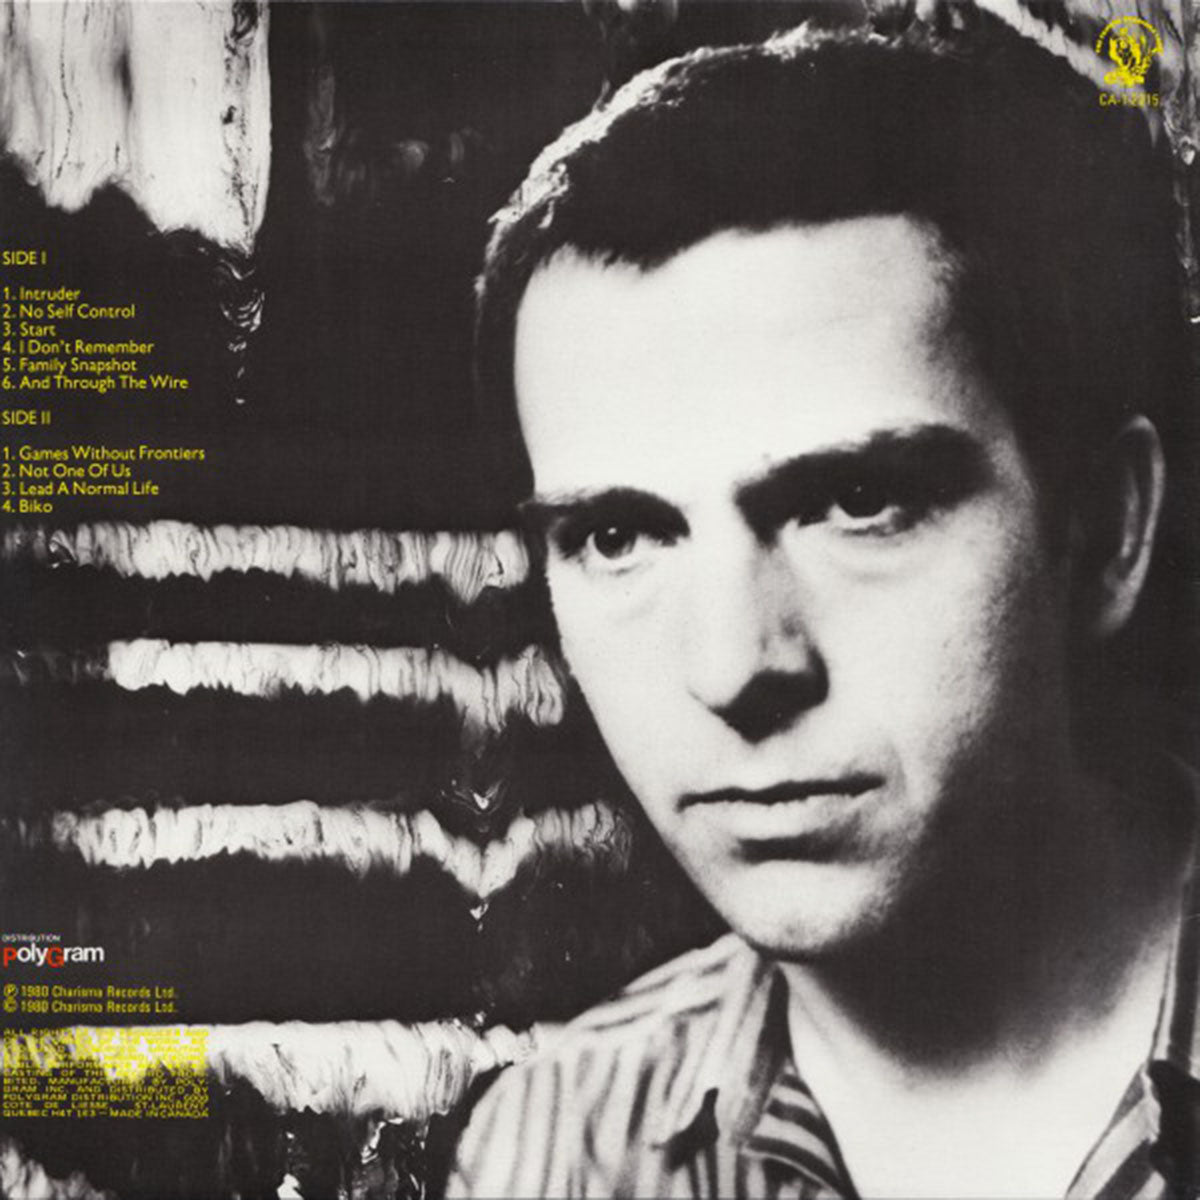 Peter Gabriel – Peter Gabriel - 1980